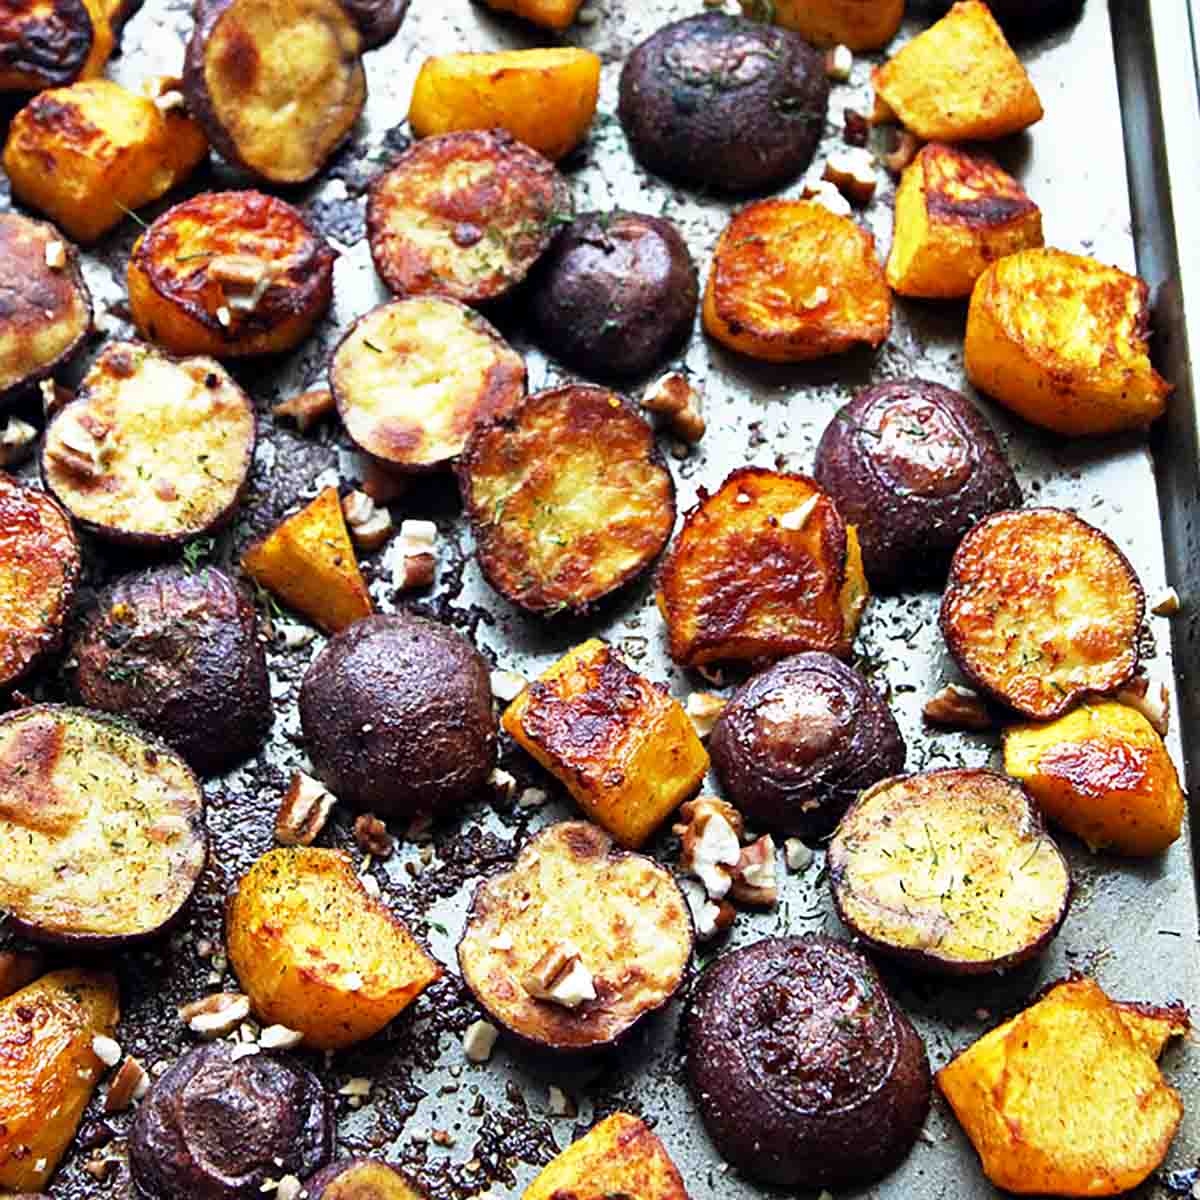 roasted baby potato halves and squash cubes on baking sheet